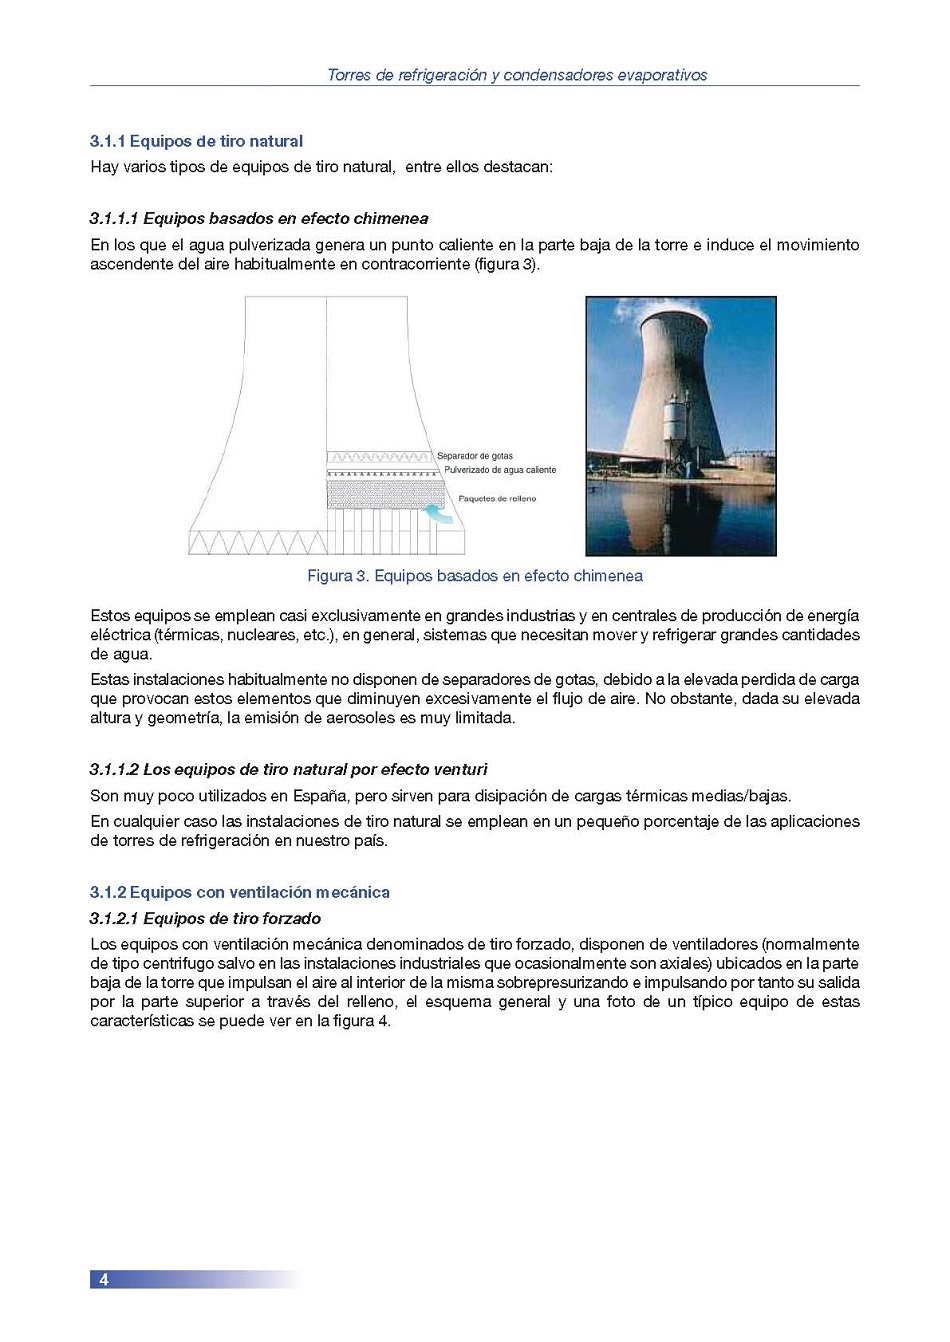 Torres de Refrigeración y Condensadores Evaporativos. Página 04